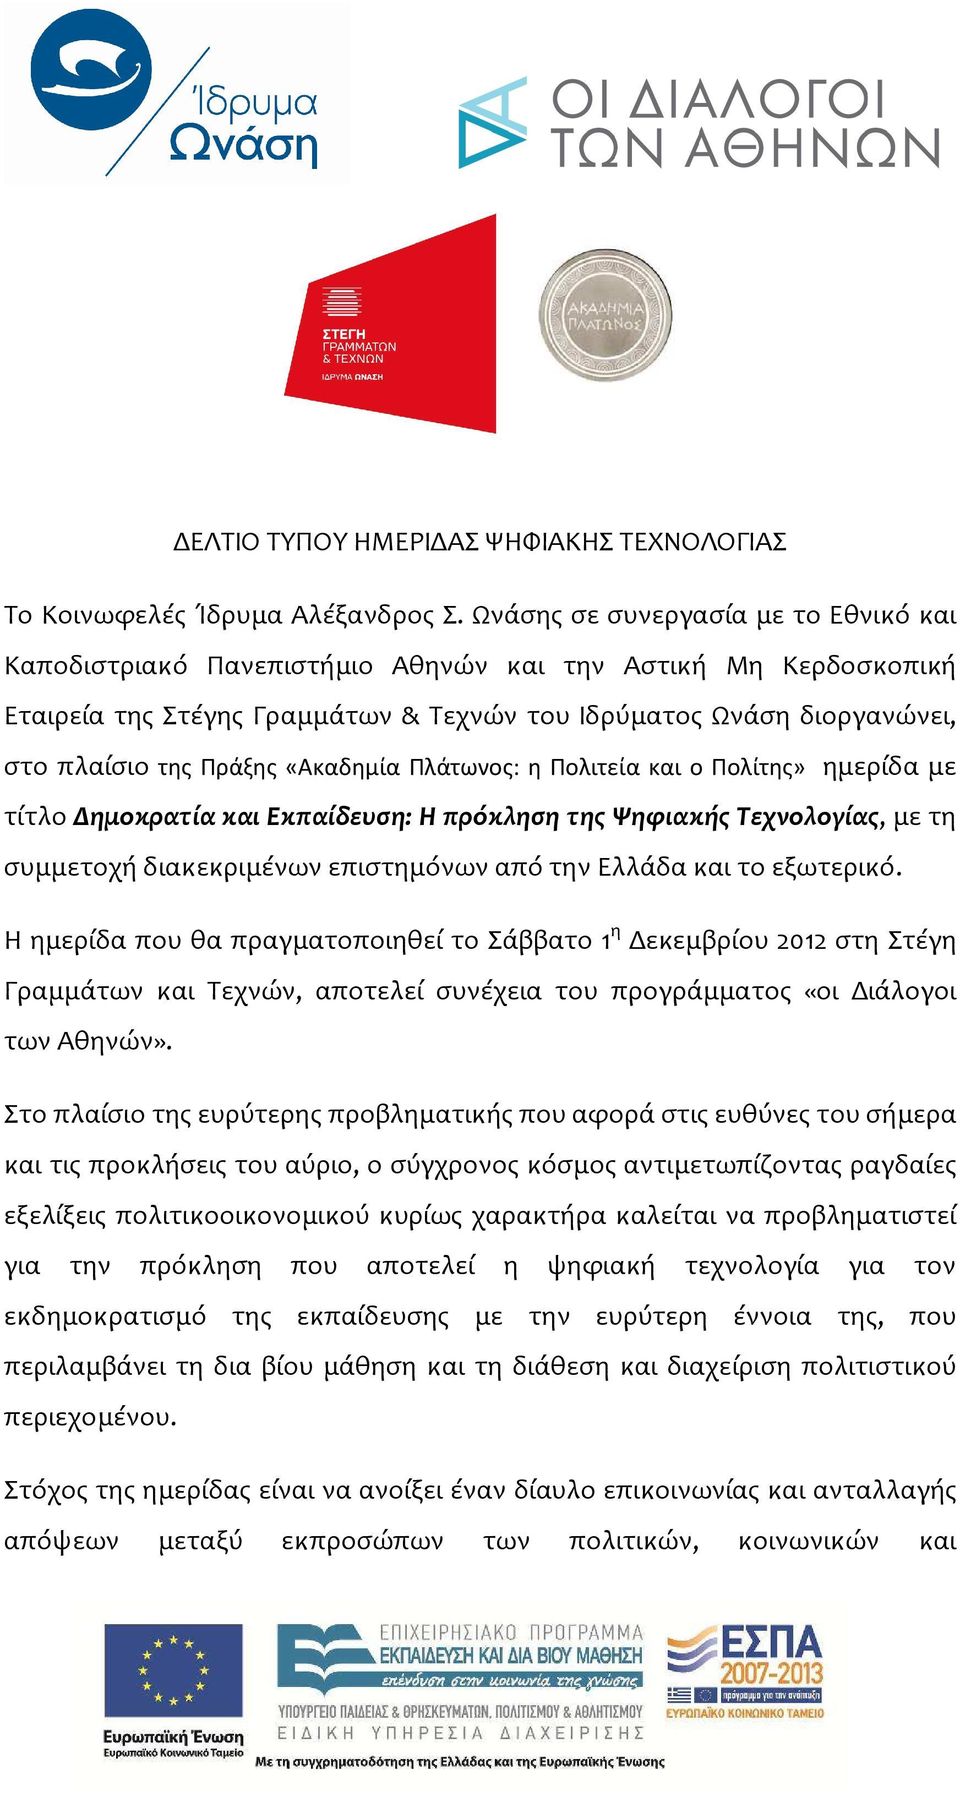 «Ακαδημία Πλάτωνος: η Πολιτεία και ο Πολίτης» ημερίδα με τίτλο Δημοκρατία και Εκπαίδευση: Η πρόκληση της Ψηφιακής Τεχνολογίας, με τη συμμετοχή διακεκριμένων επιστημόνων από την Ελλάδα και το